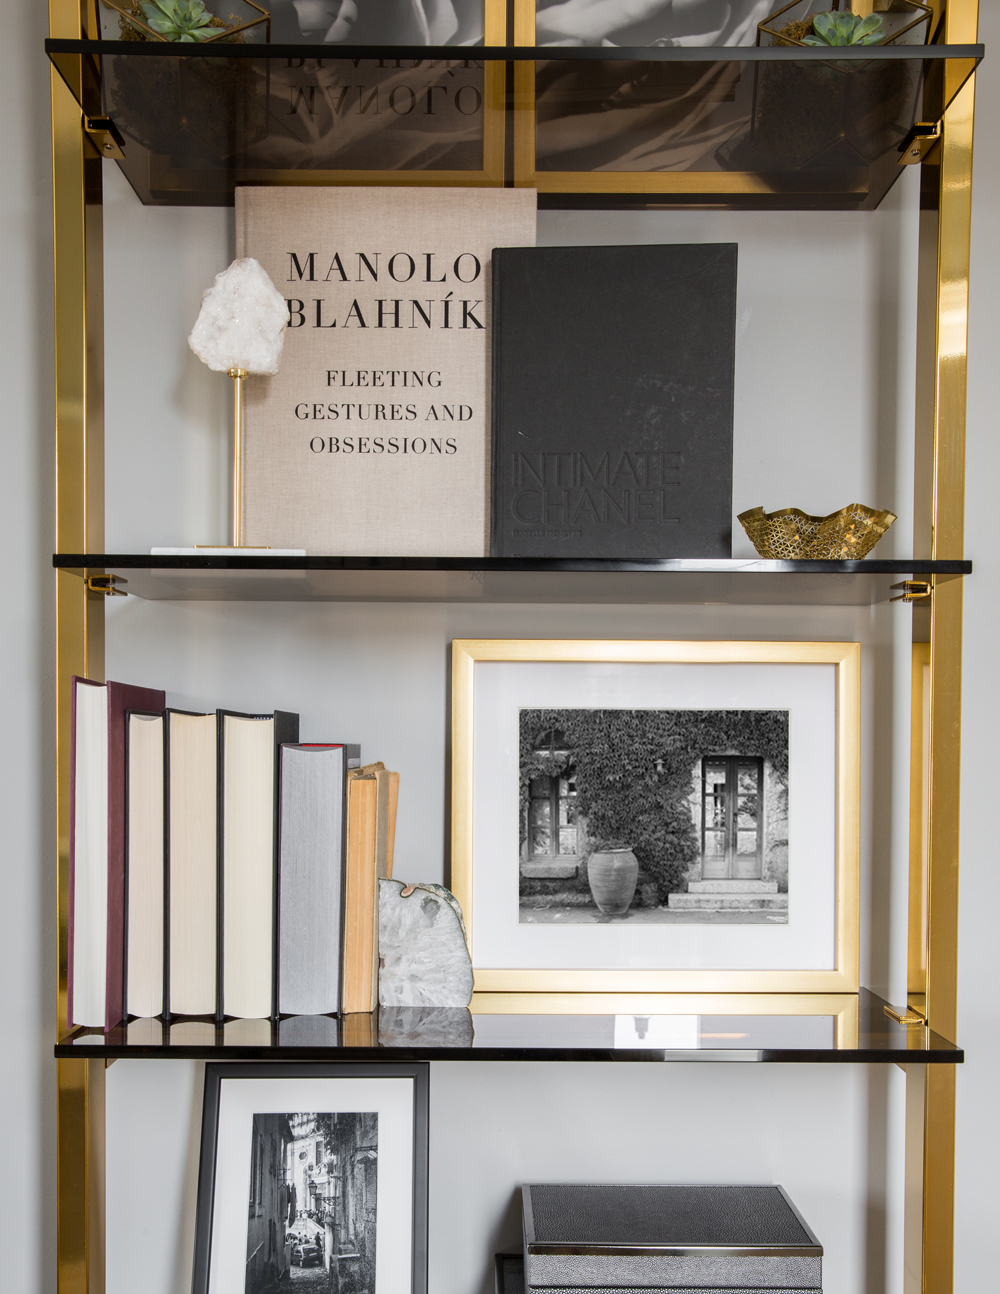 brass frame book shelf with smoked glass shelves, photos, fashion books